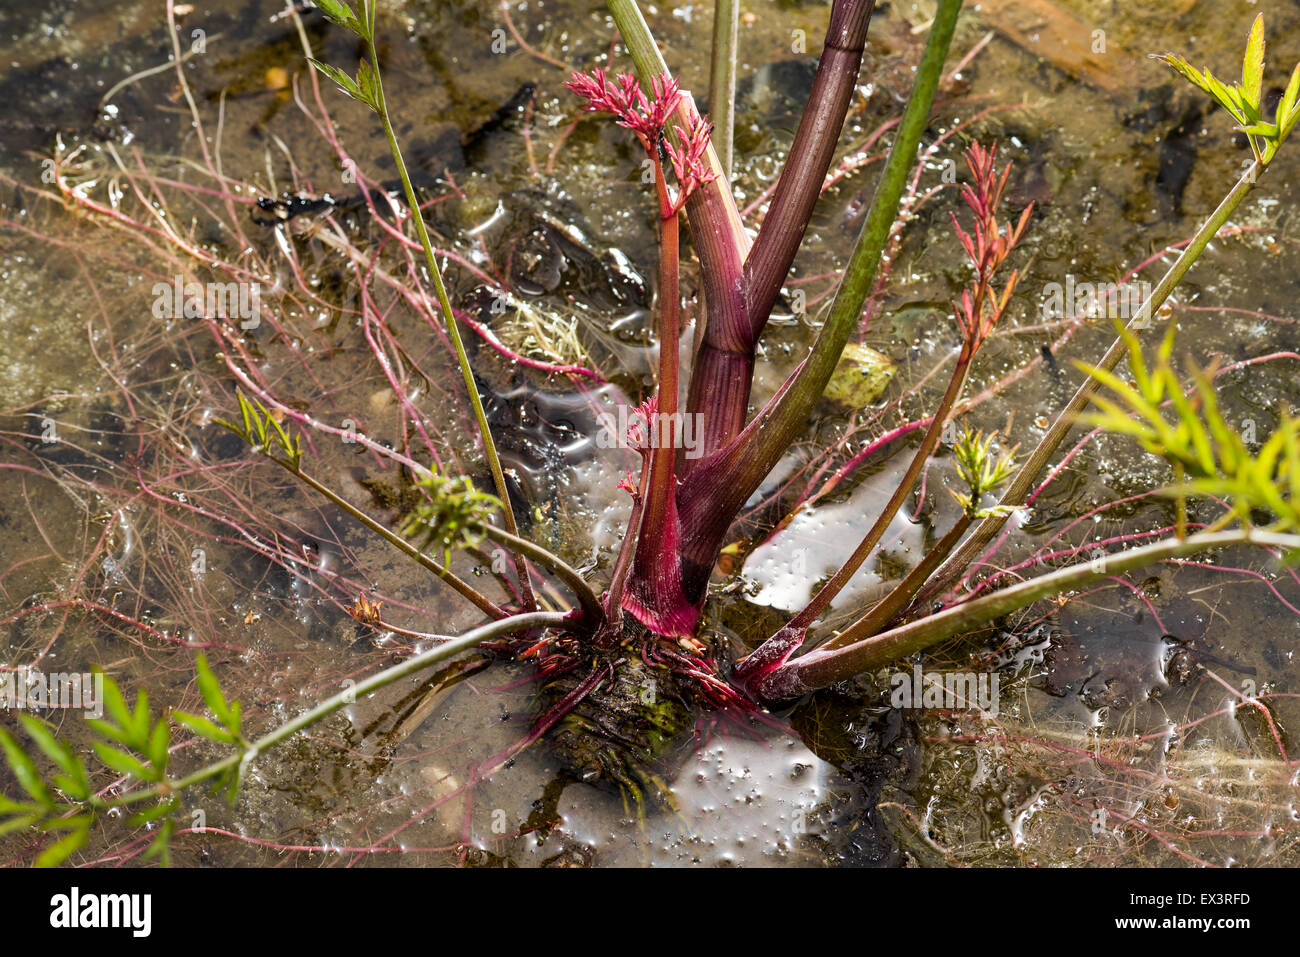 Apiaceae CICUTA VIROSA Poison Wasser Hemlock Poison Hemlock Wasser Hemlock ist hochgiftig im Wasser, alle Teile der Pflanze h Stockfoto